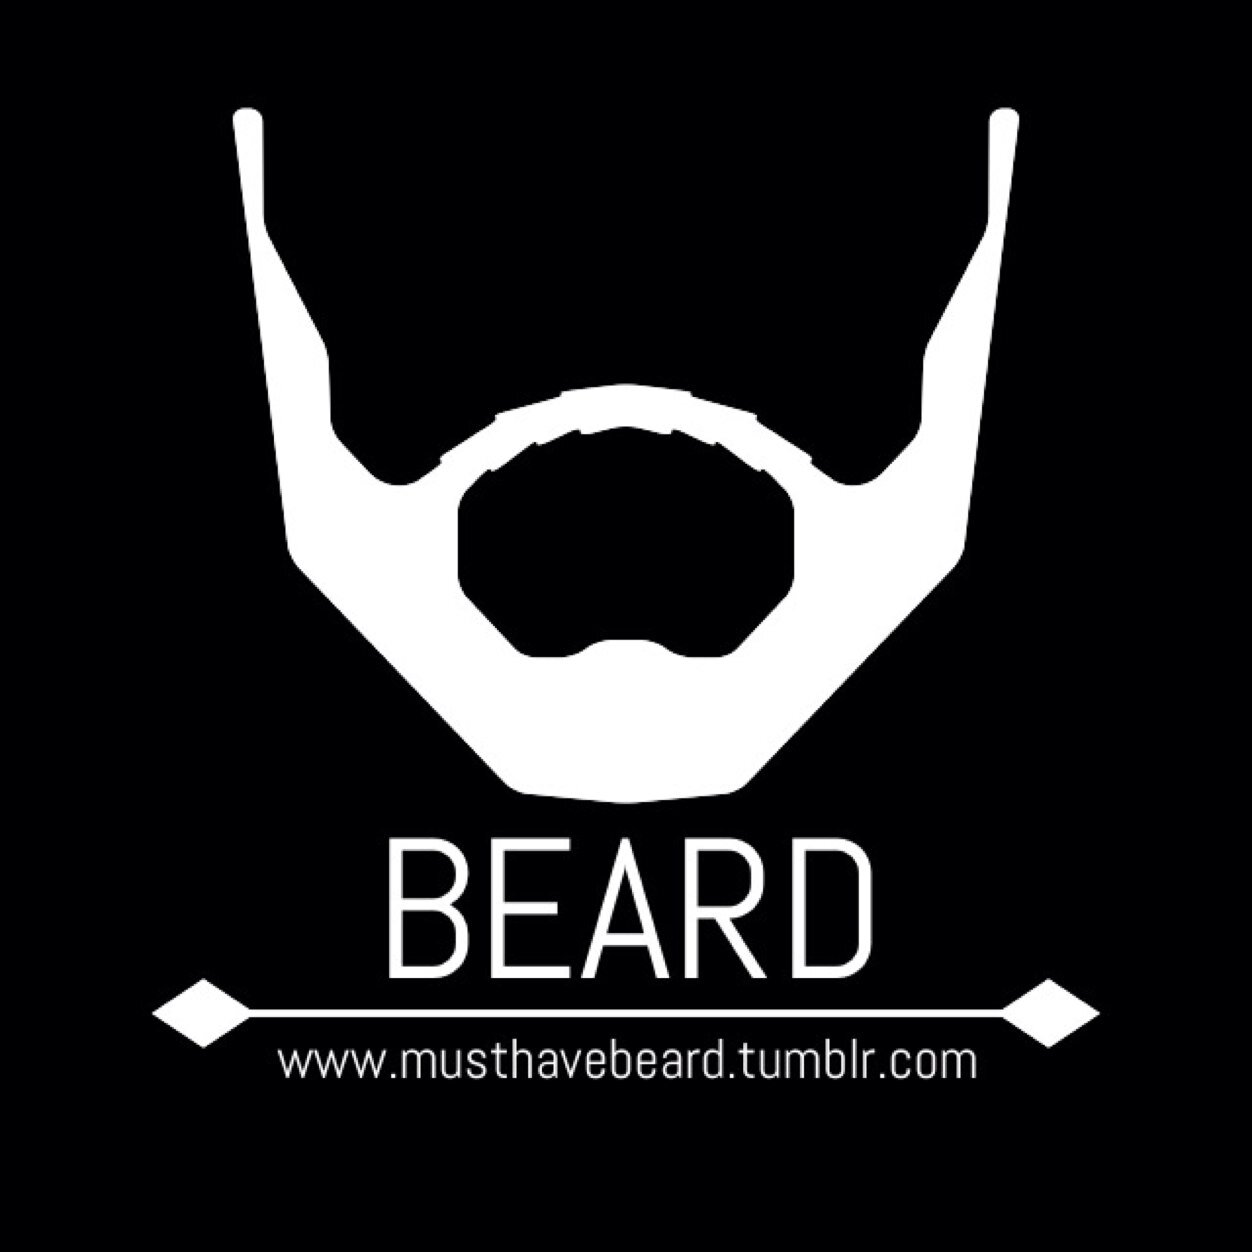 Beard Community